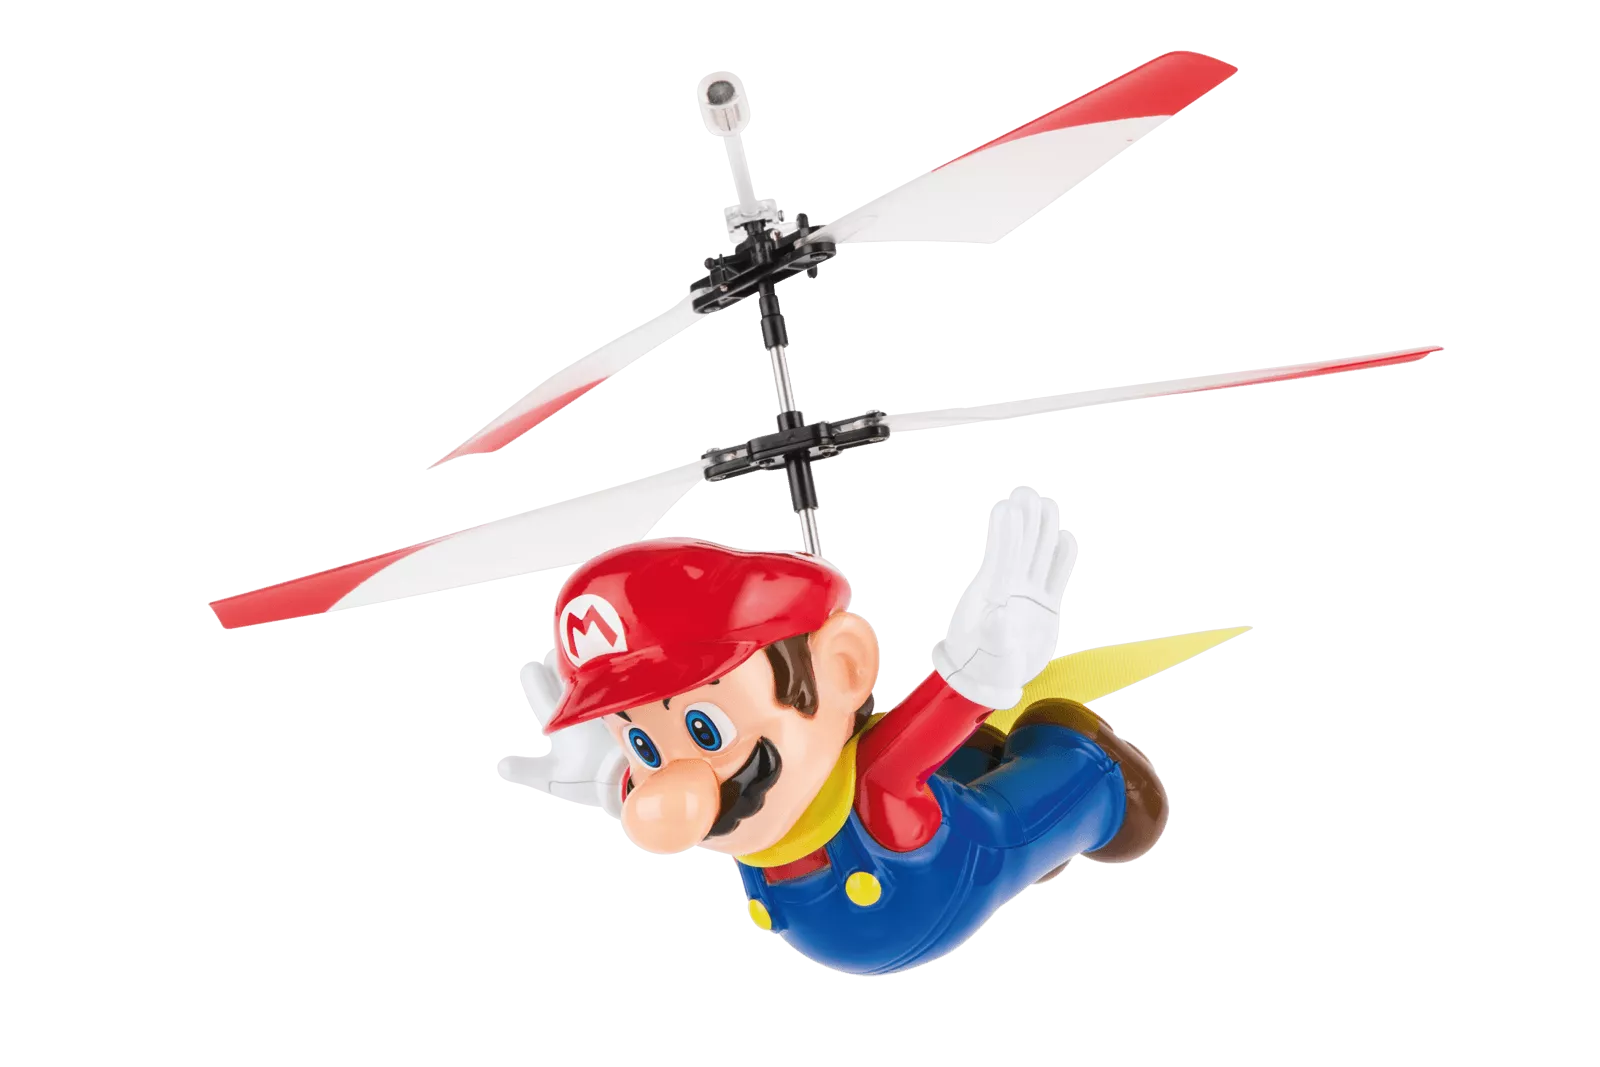 Radio Control Helicopter Carrera Super Mario - Flying Cap Mario 2.4GHz